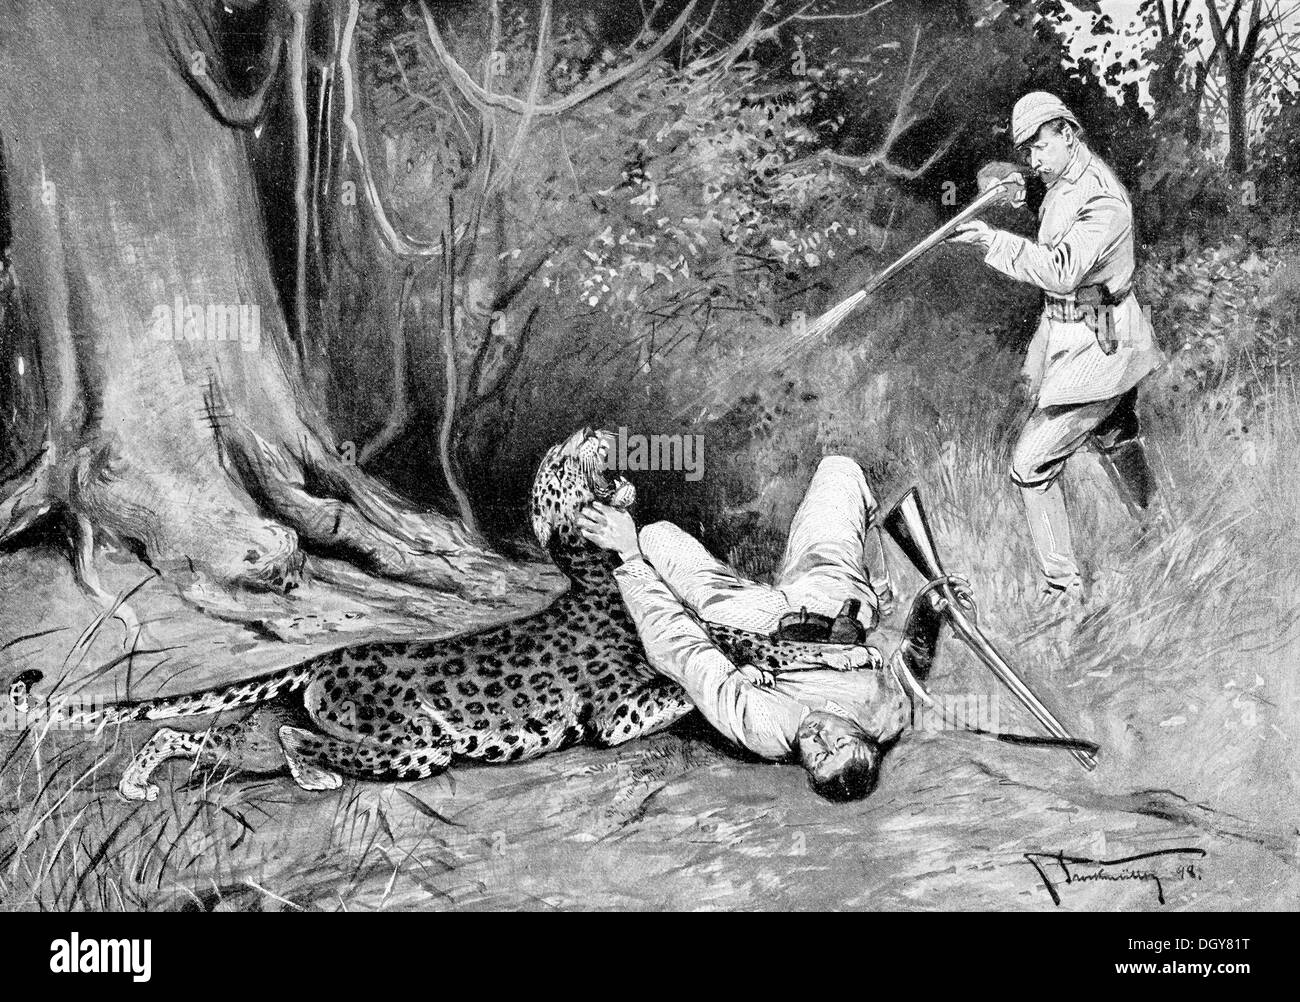 Leoparden jagen in Deutsch-Südwestafrika, Illustration aus dem Jahrbuch für moderne Kunst in Meister-Holzschnitten, 1900, Namibia Stockfoto